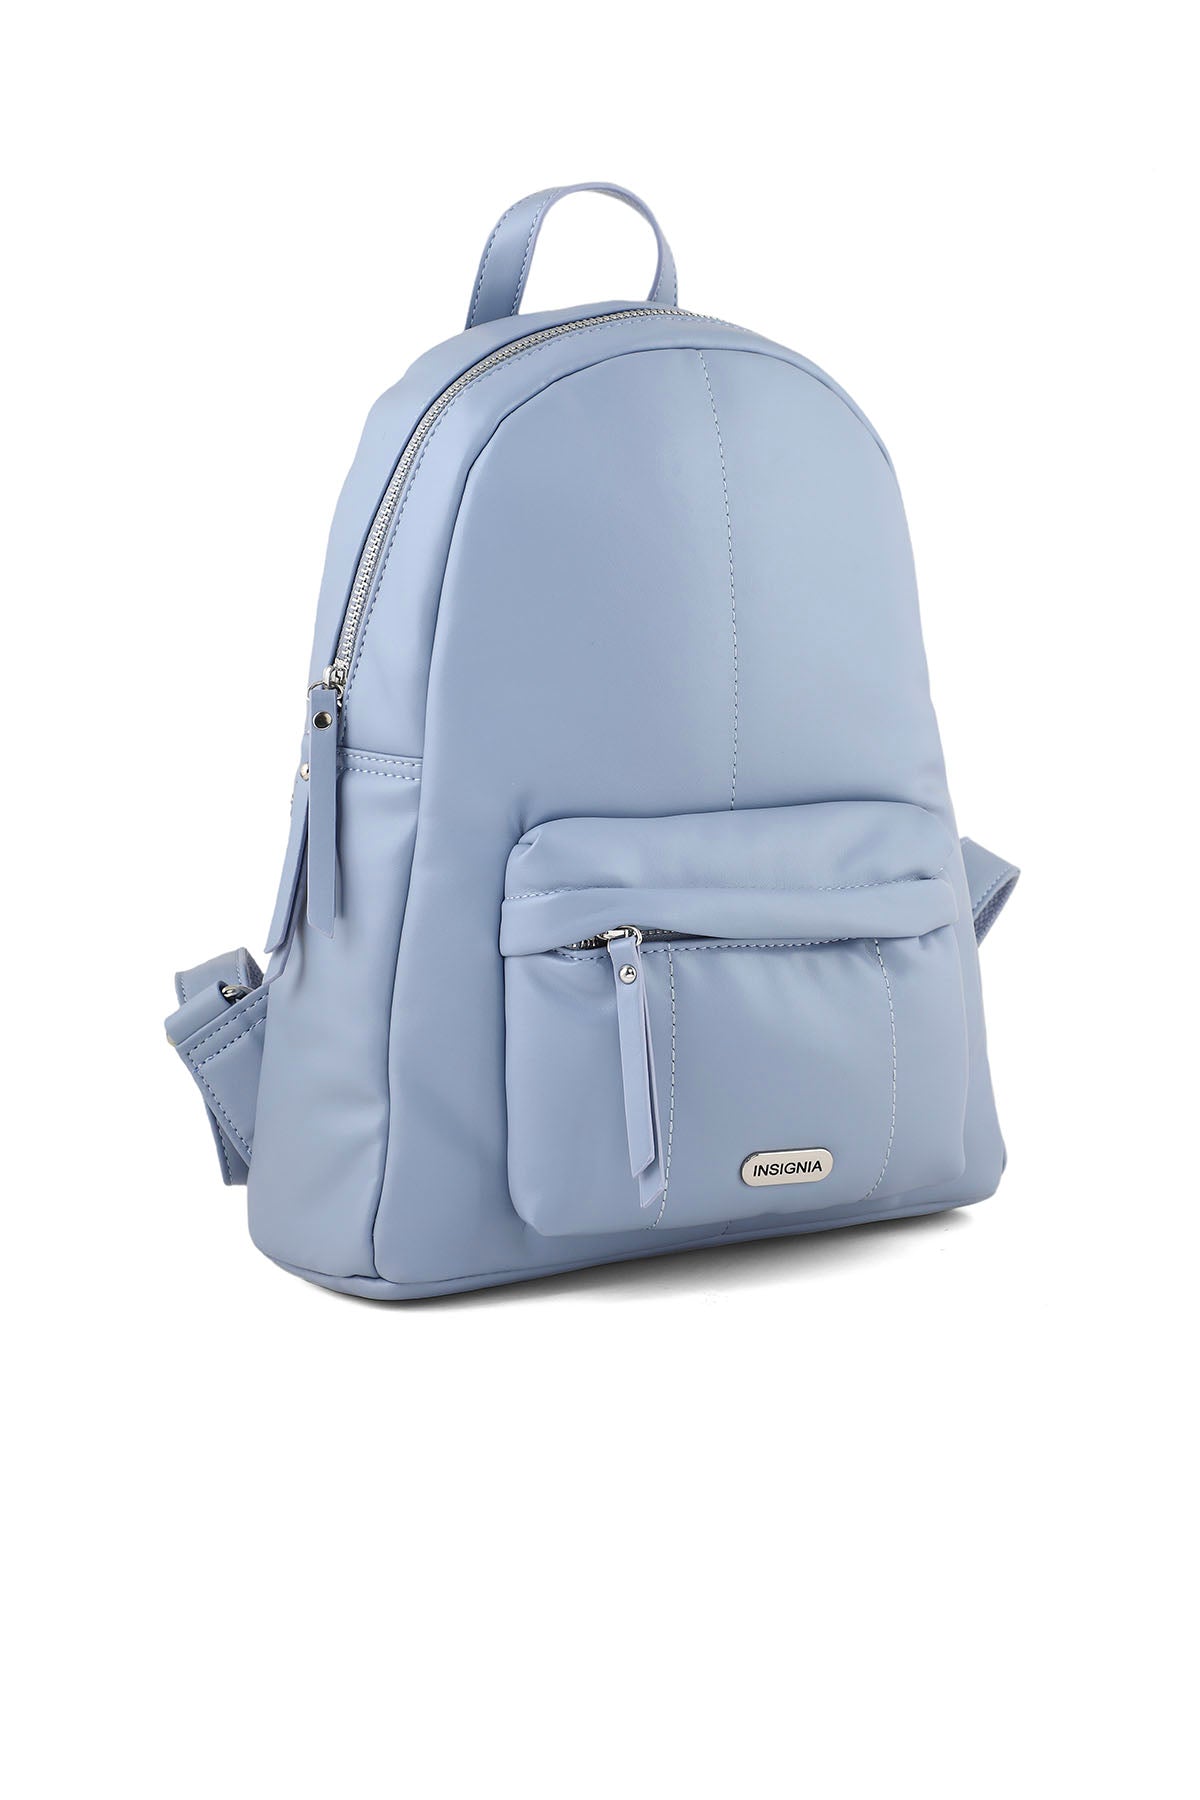 Backpack B15019-Blue